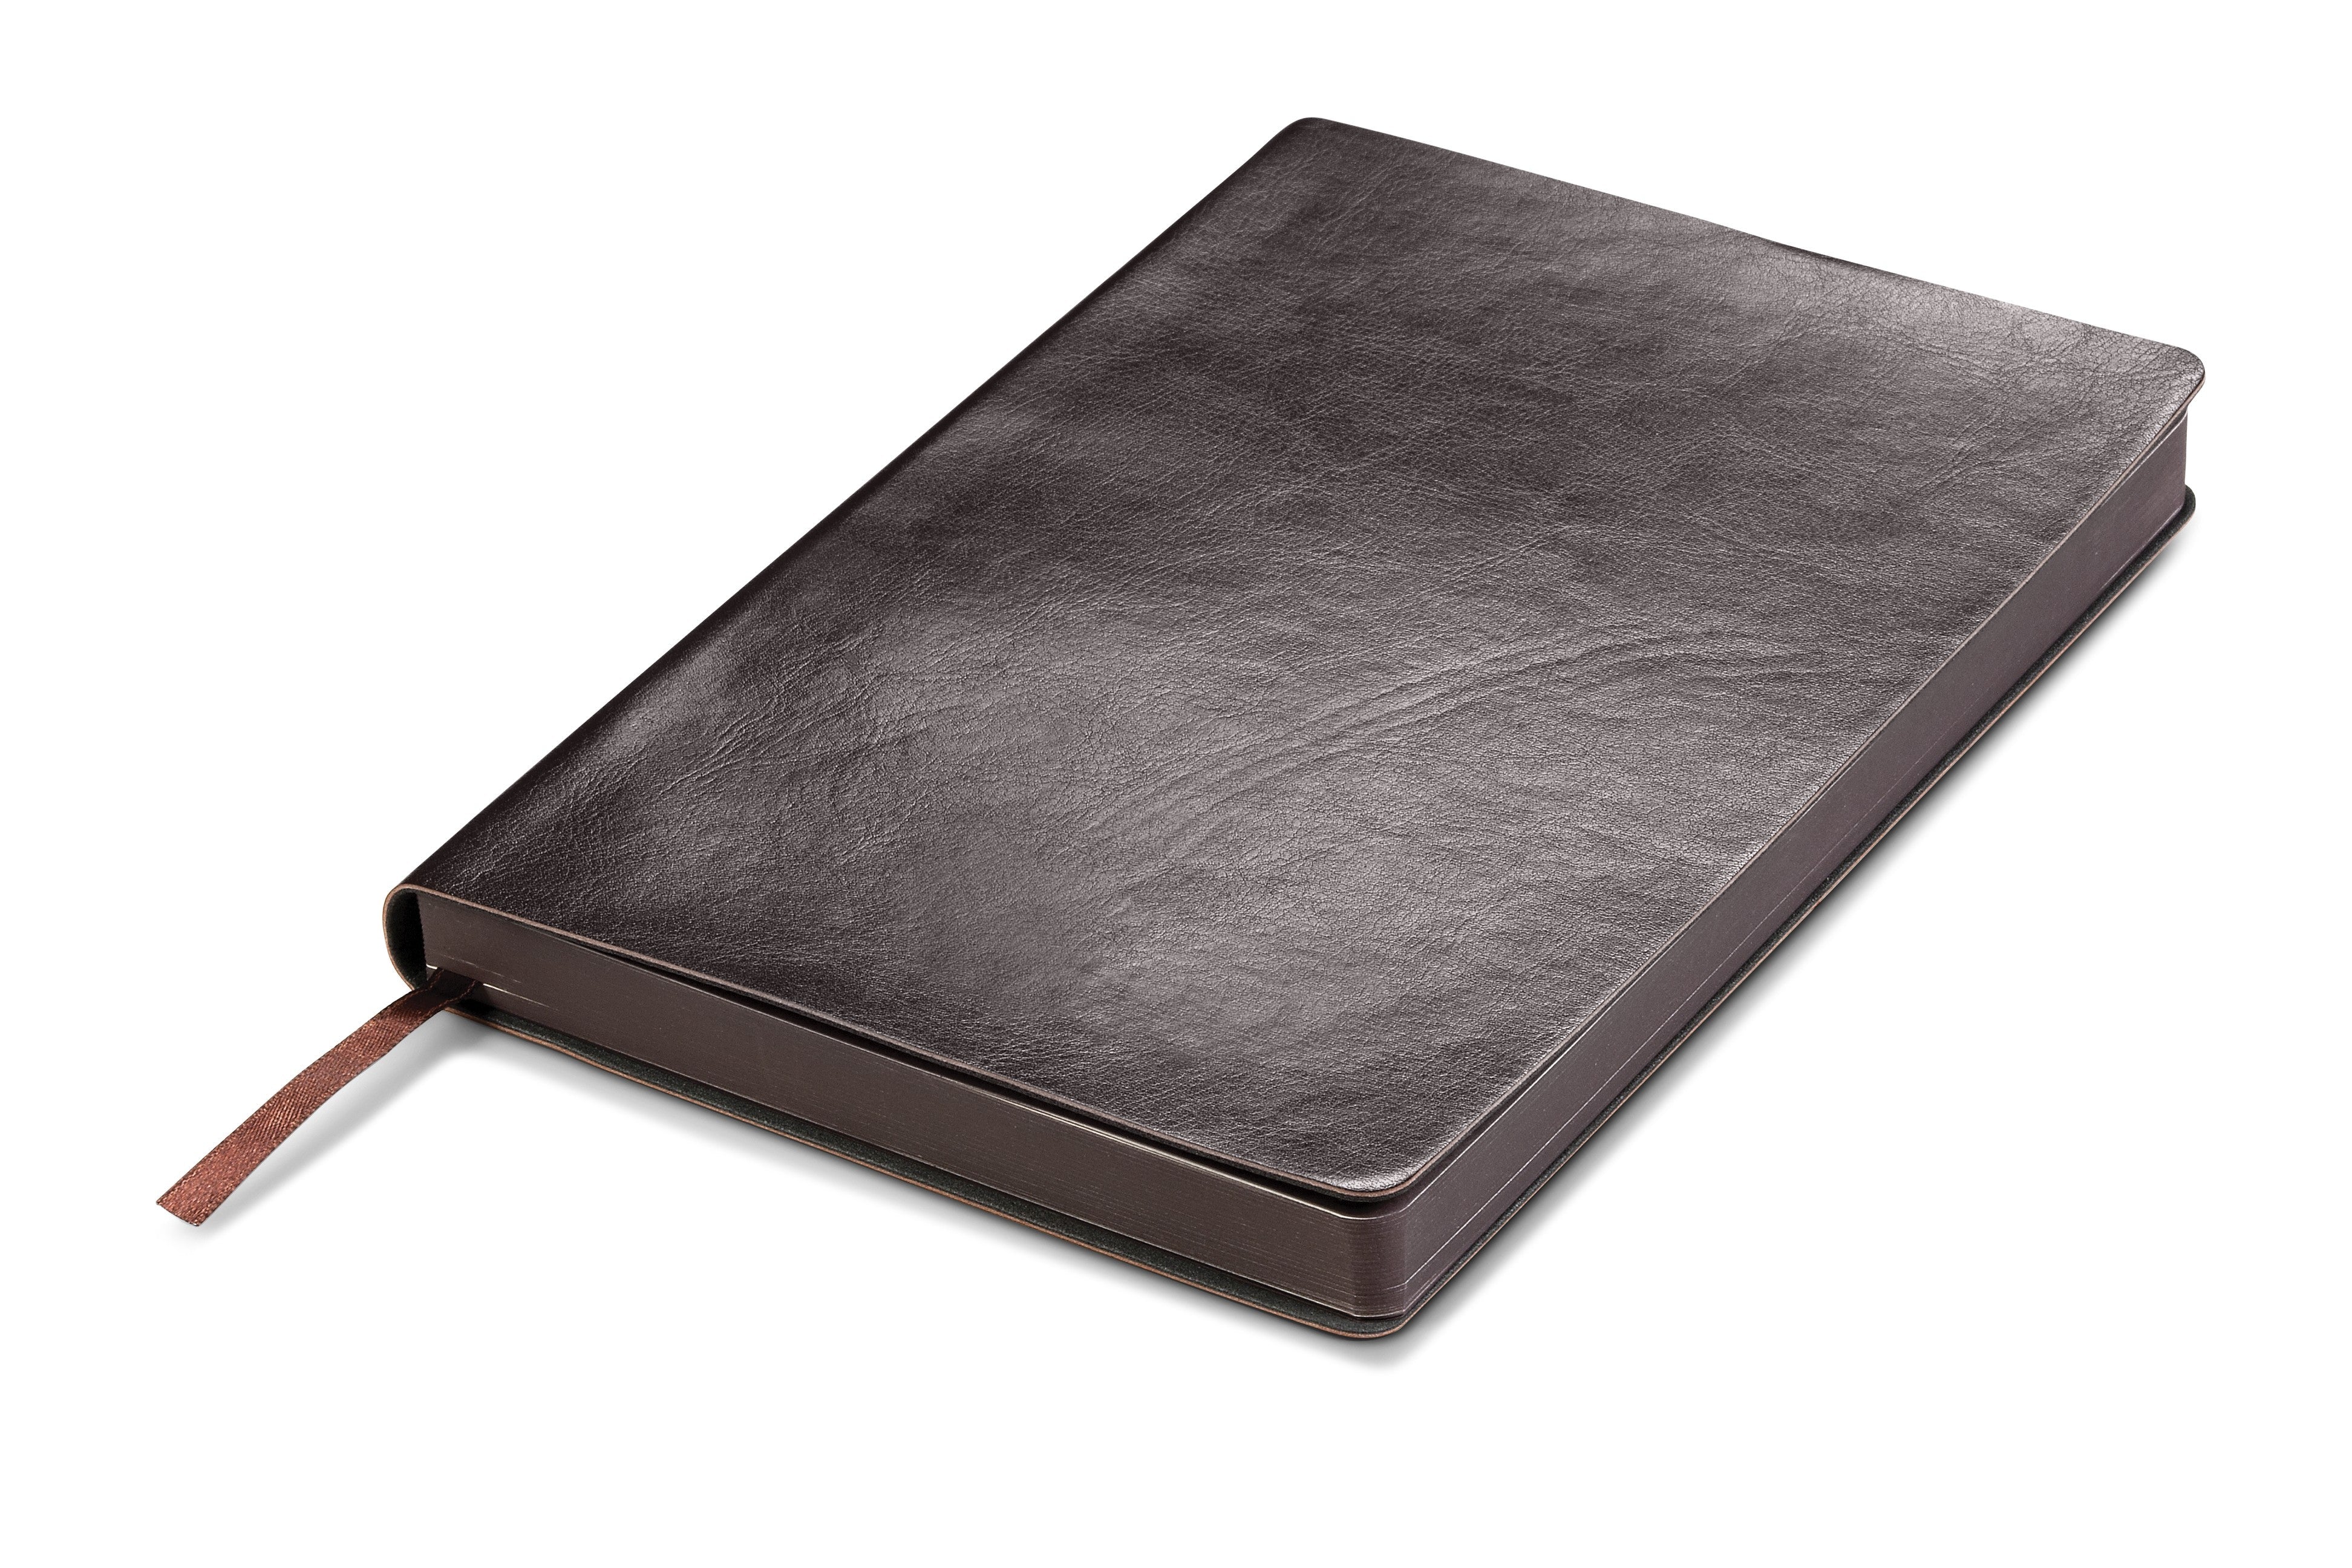 Renaissance A5 Soft Cover Notebook Brown / BN - Notebooks & 